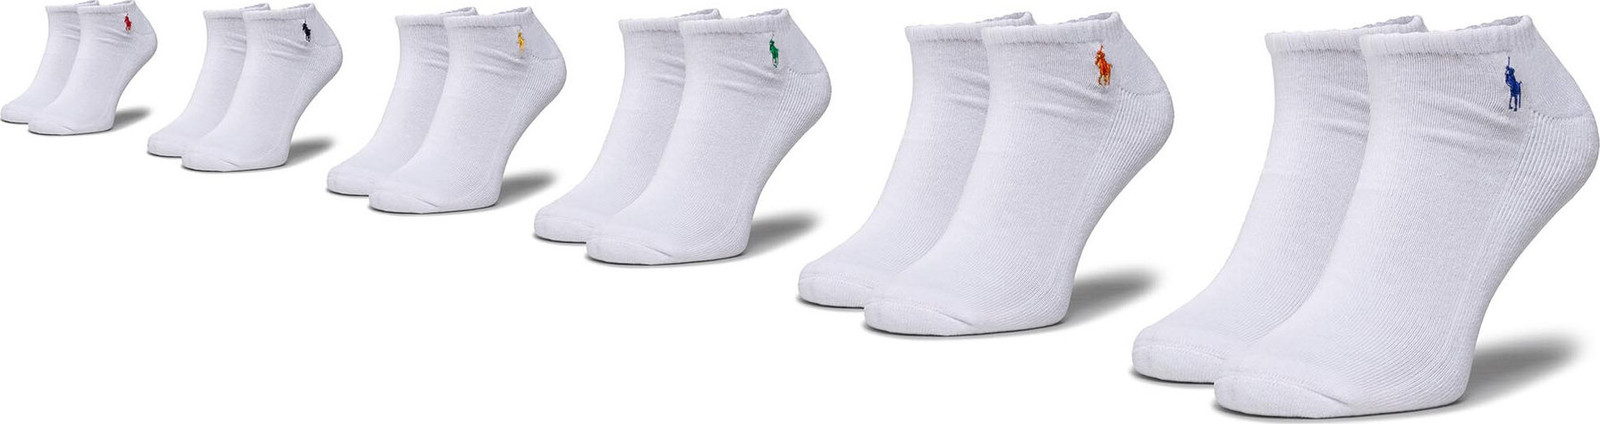 Sada 6 párů dámských nízkých ponožek Polo Ralph Lauren 449799739002 r.OS White